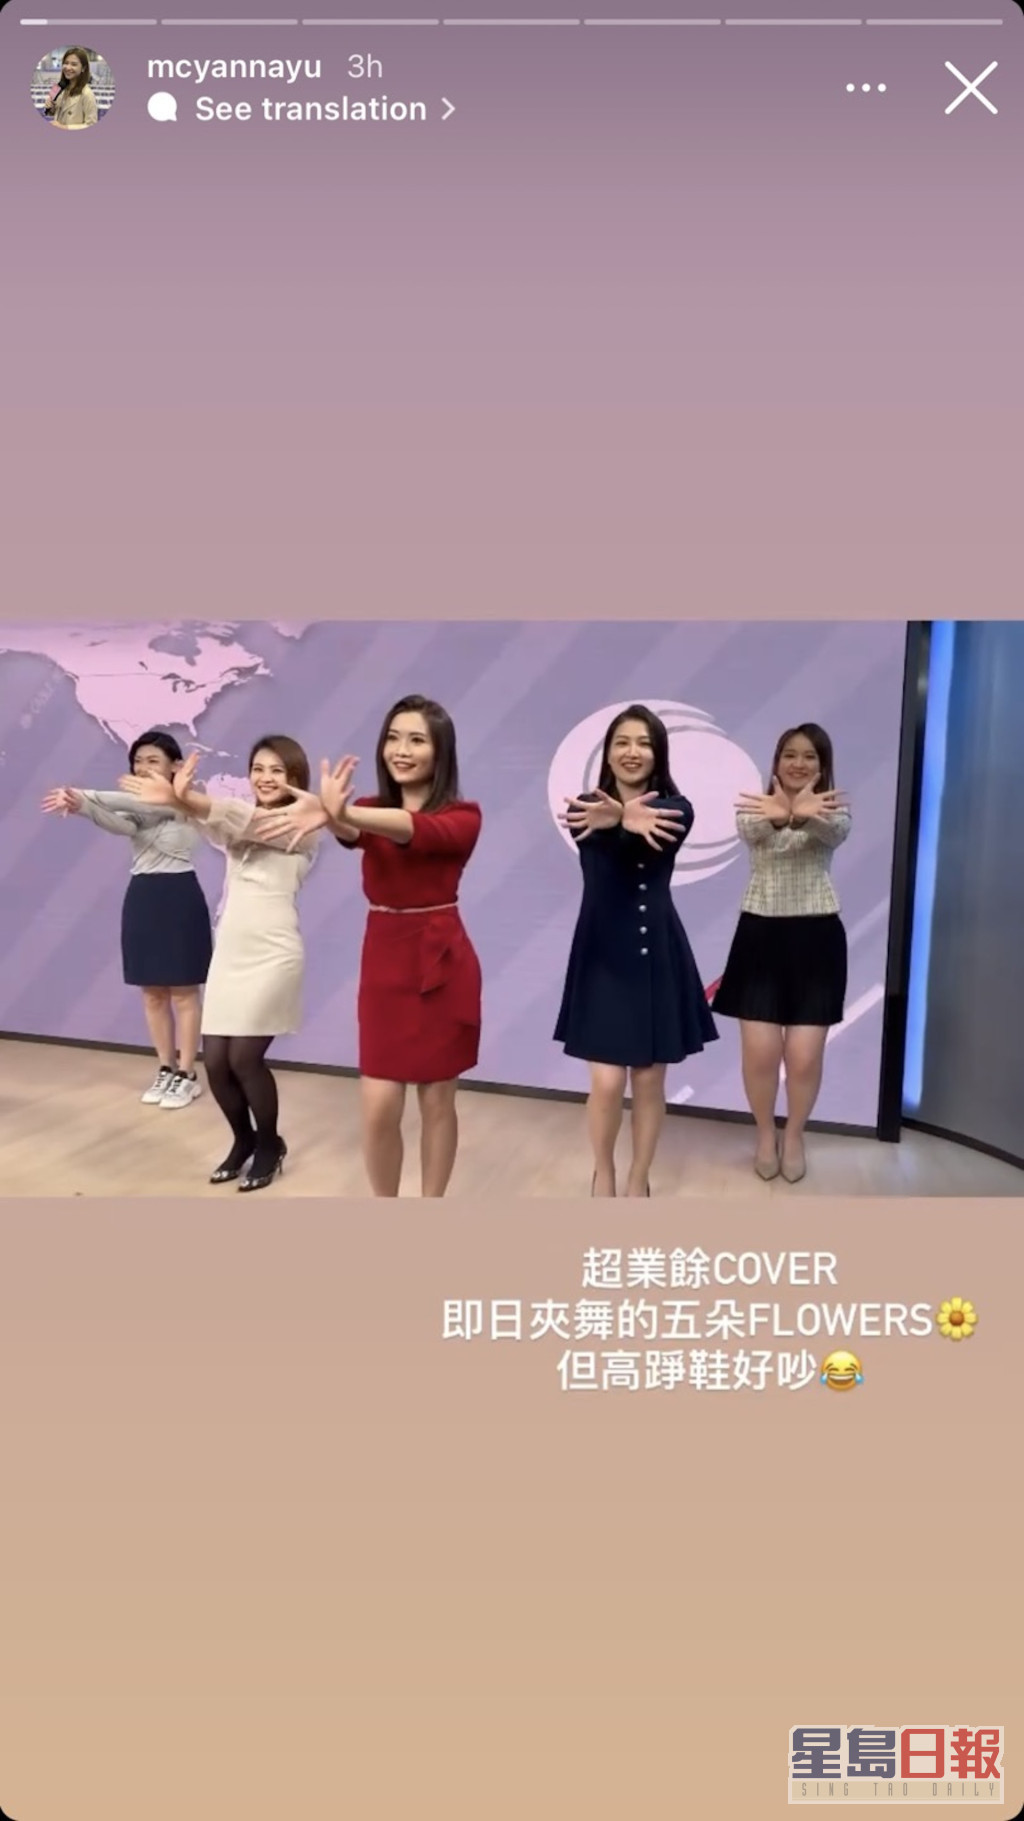 当日五位主播在新闻布景板前大跳韩国女团BLACKPINK成员Jisoo的《FLOWER》开花舞。